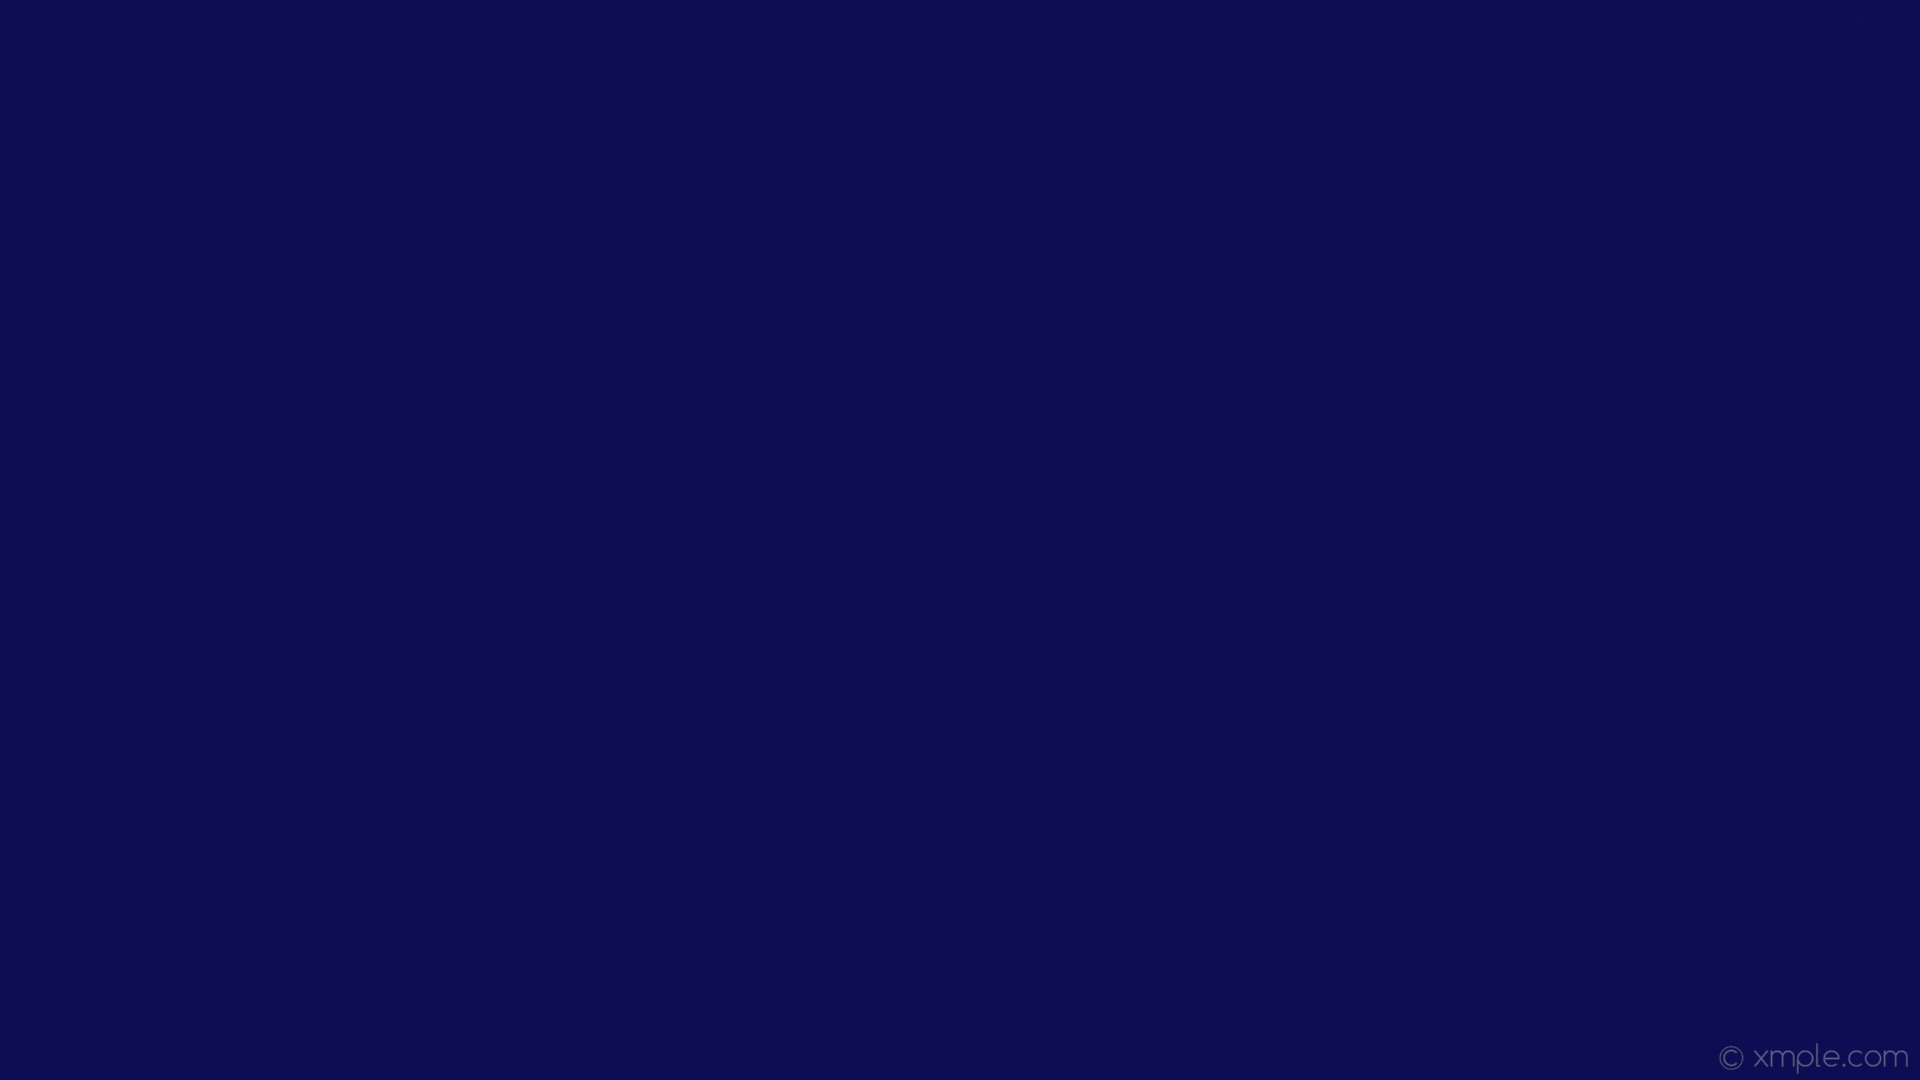 1920x1080 wallpaper solid color plain one colour single blue dark blue #0c0d52